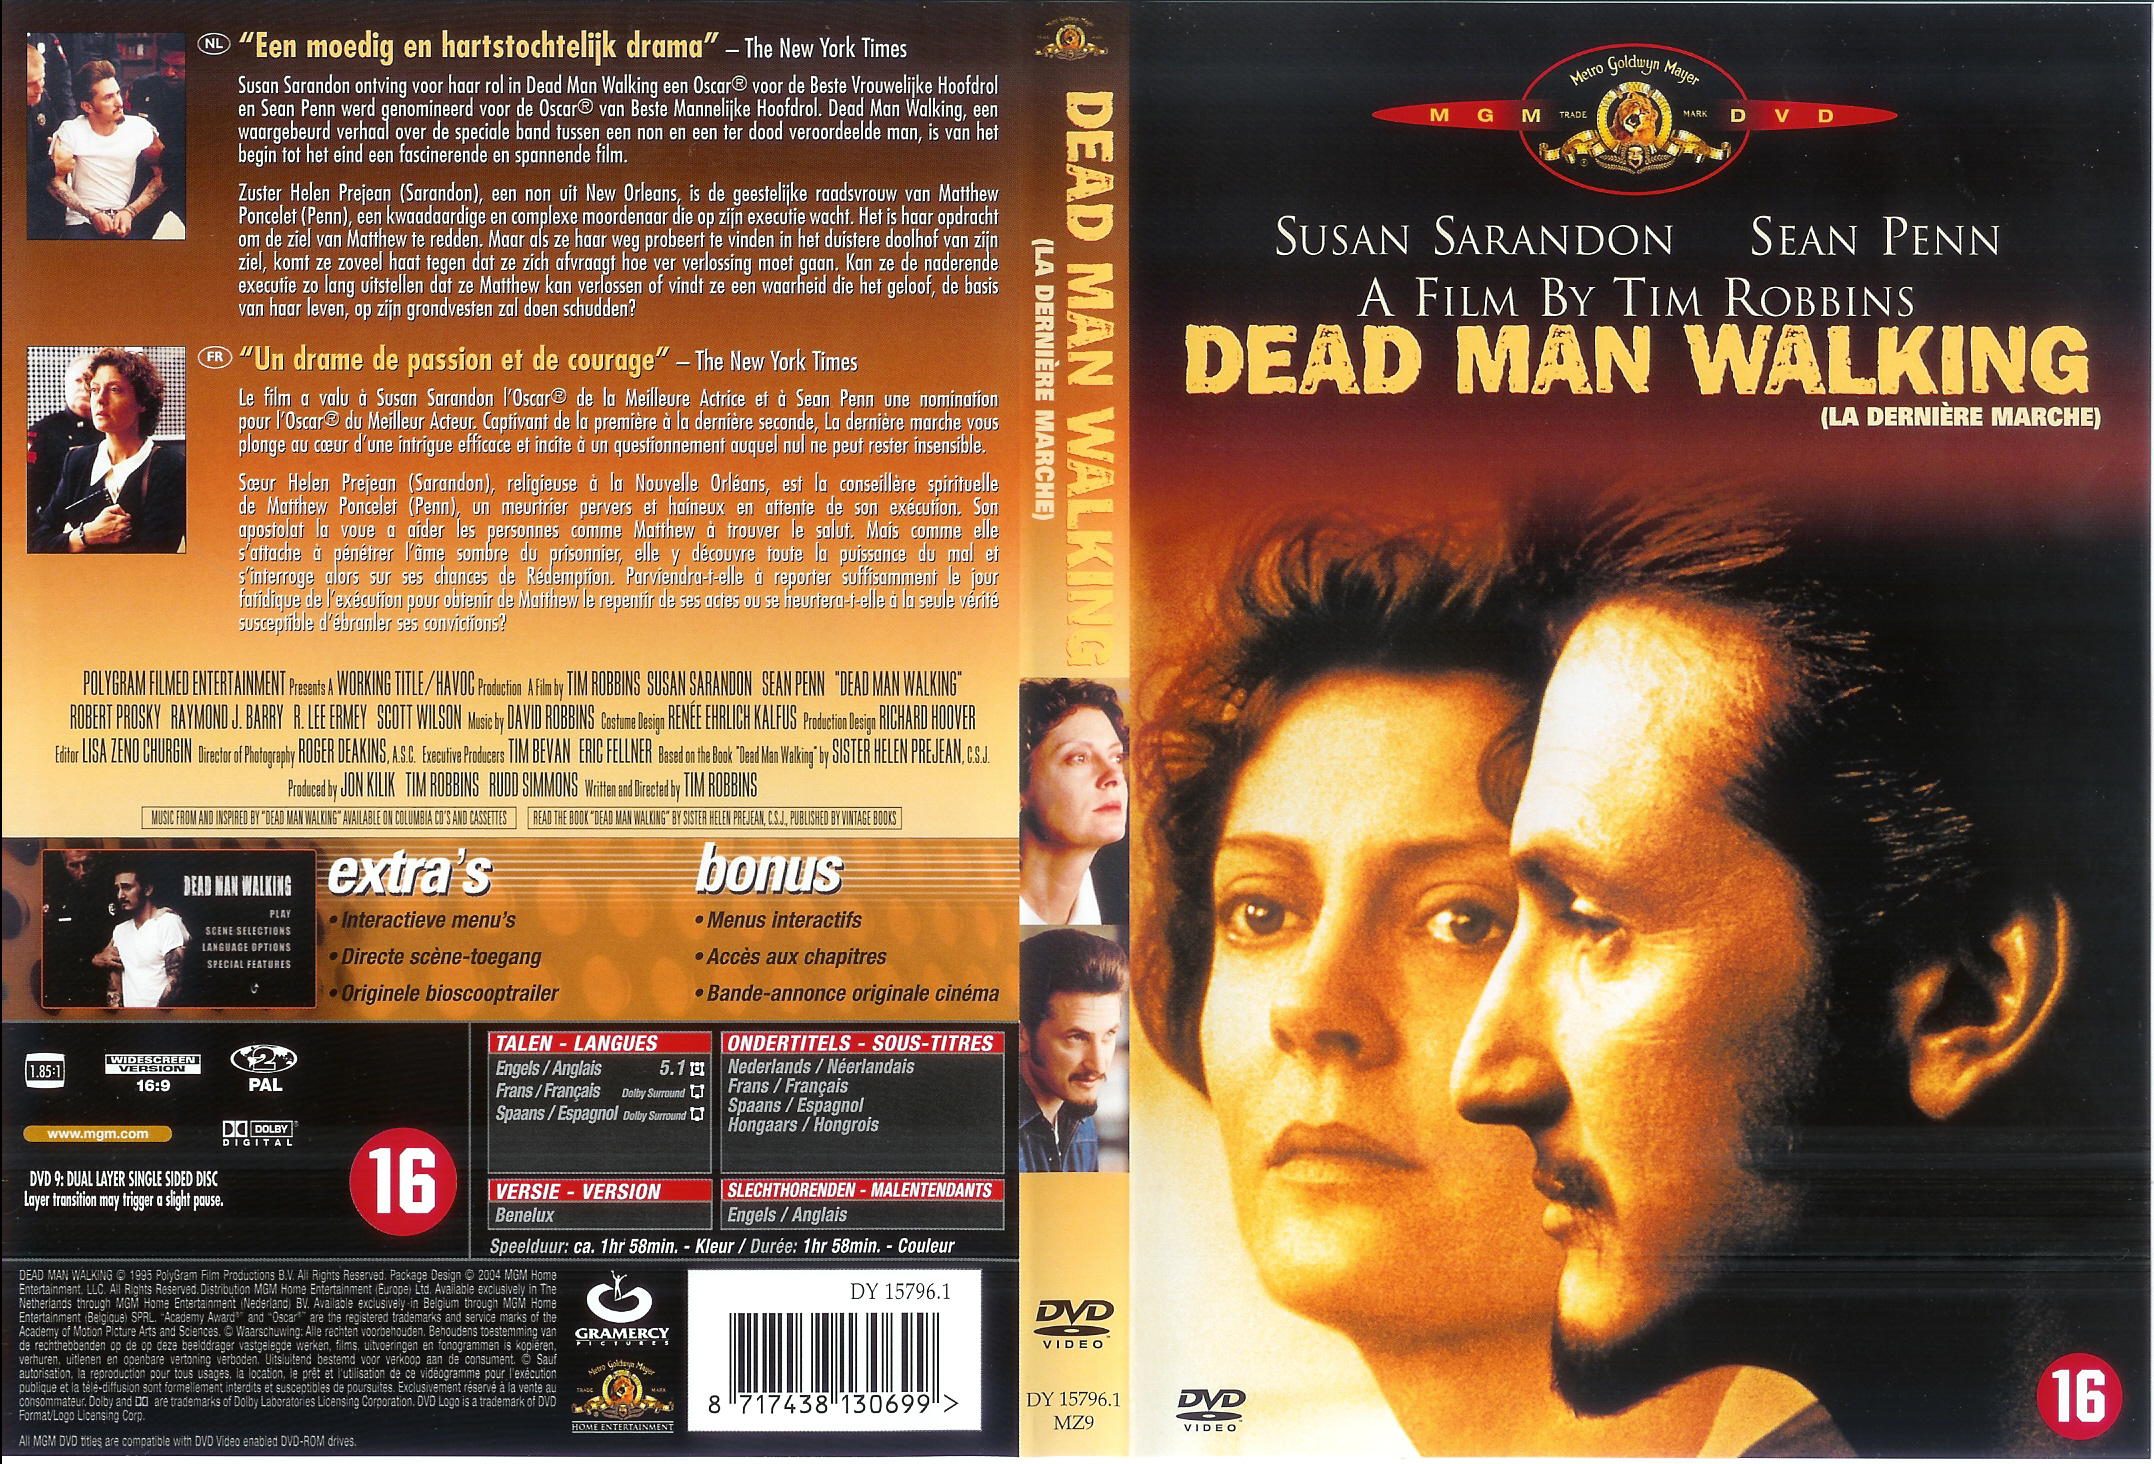 Jaquette DVD Dead man walking